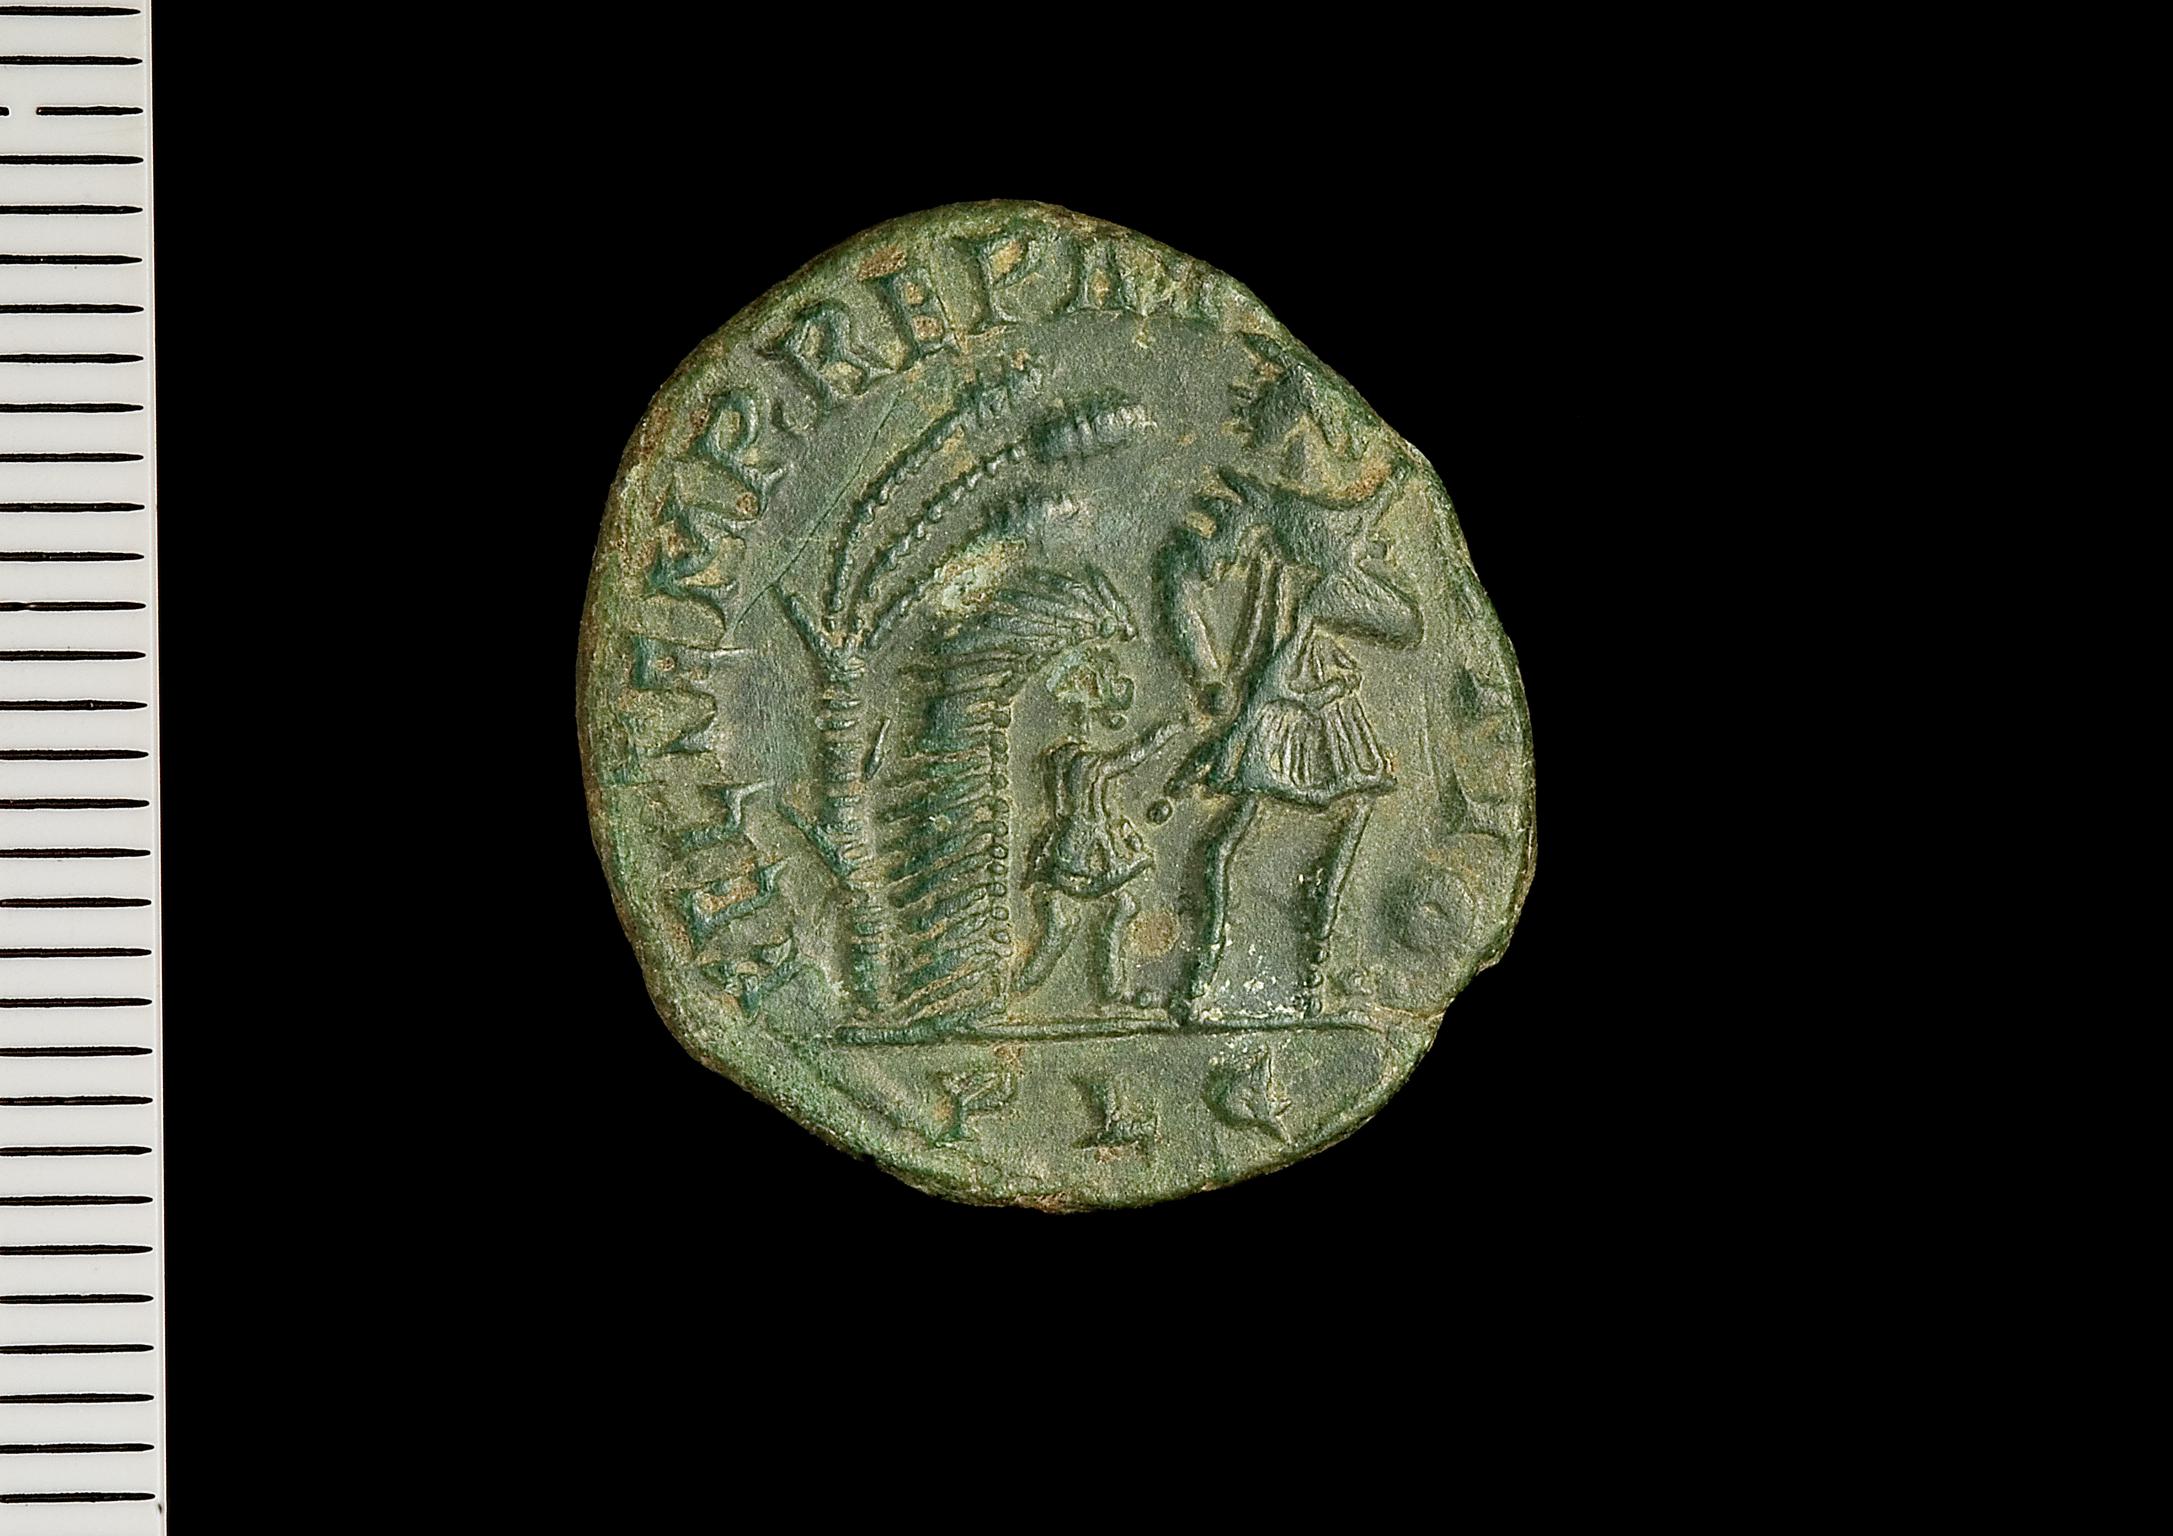 Llys Awel Roman coins